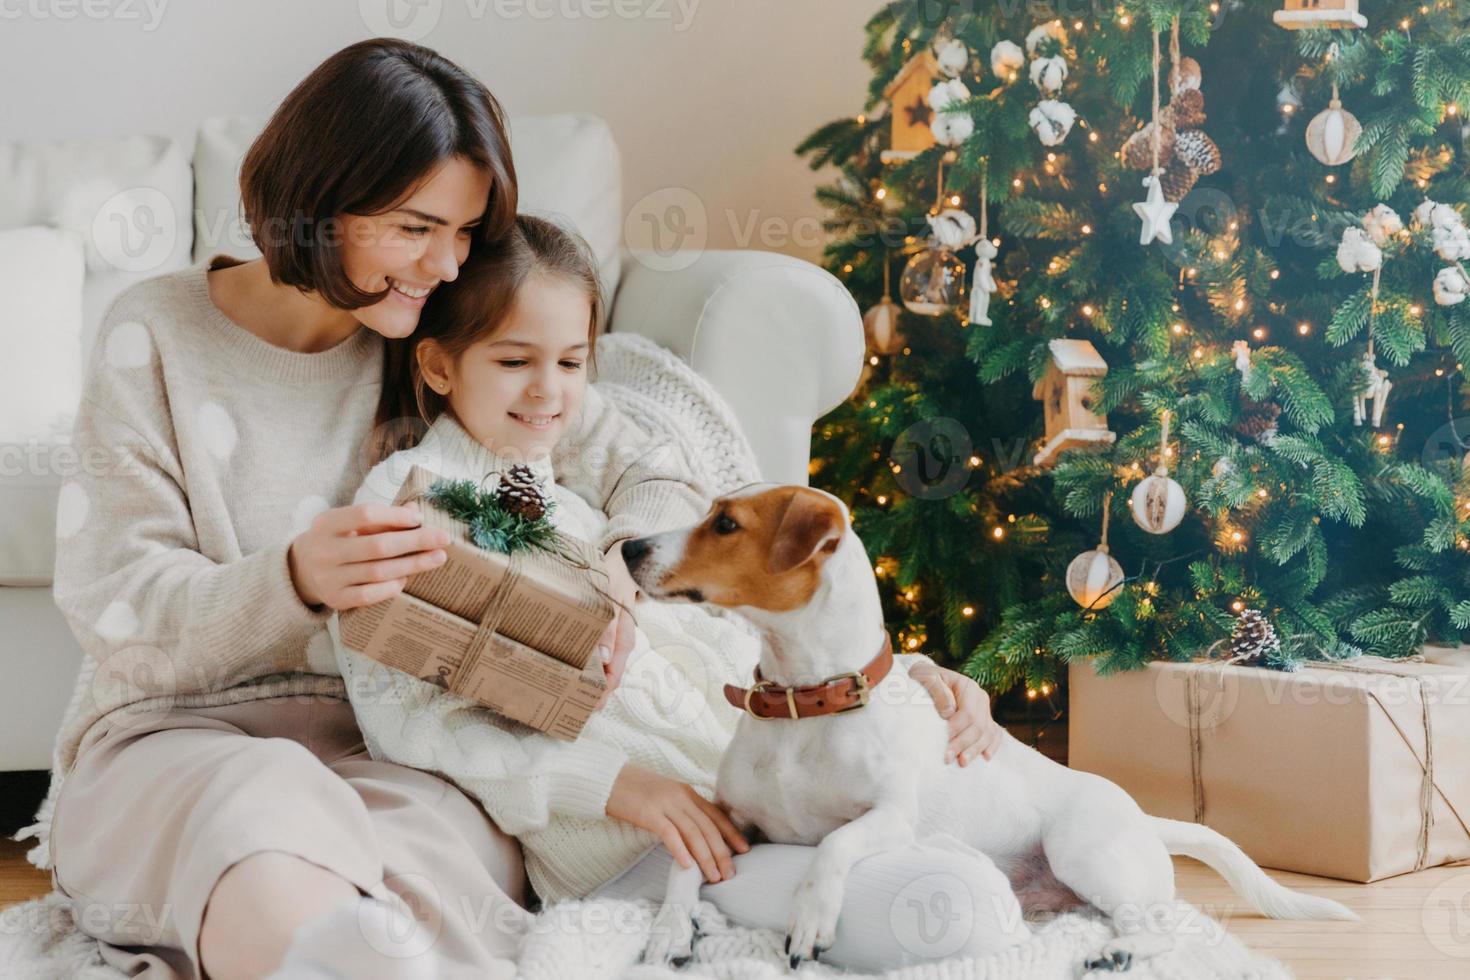 gelukkige jonge vrouw omhelst haar dochtertje, houdt kerstcadeau, wacht op wintervakantie, spelen met stamboom puppy, poseren op de vloer in de buurt van versierde nieuwjaarsboom. gelukkig familie tijd concept foto